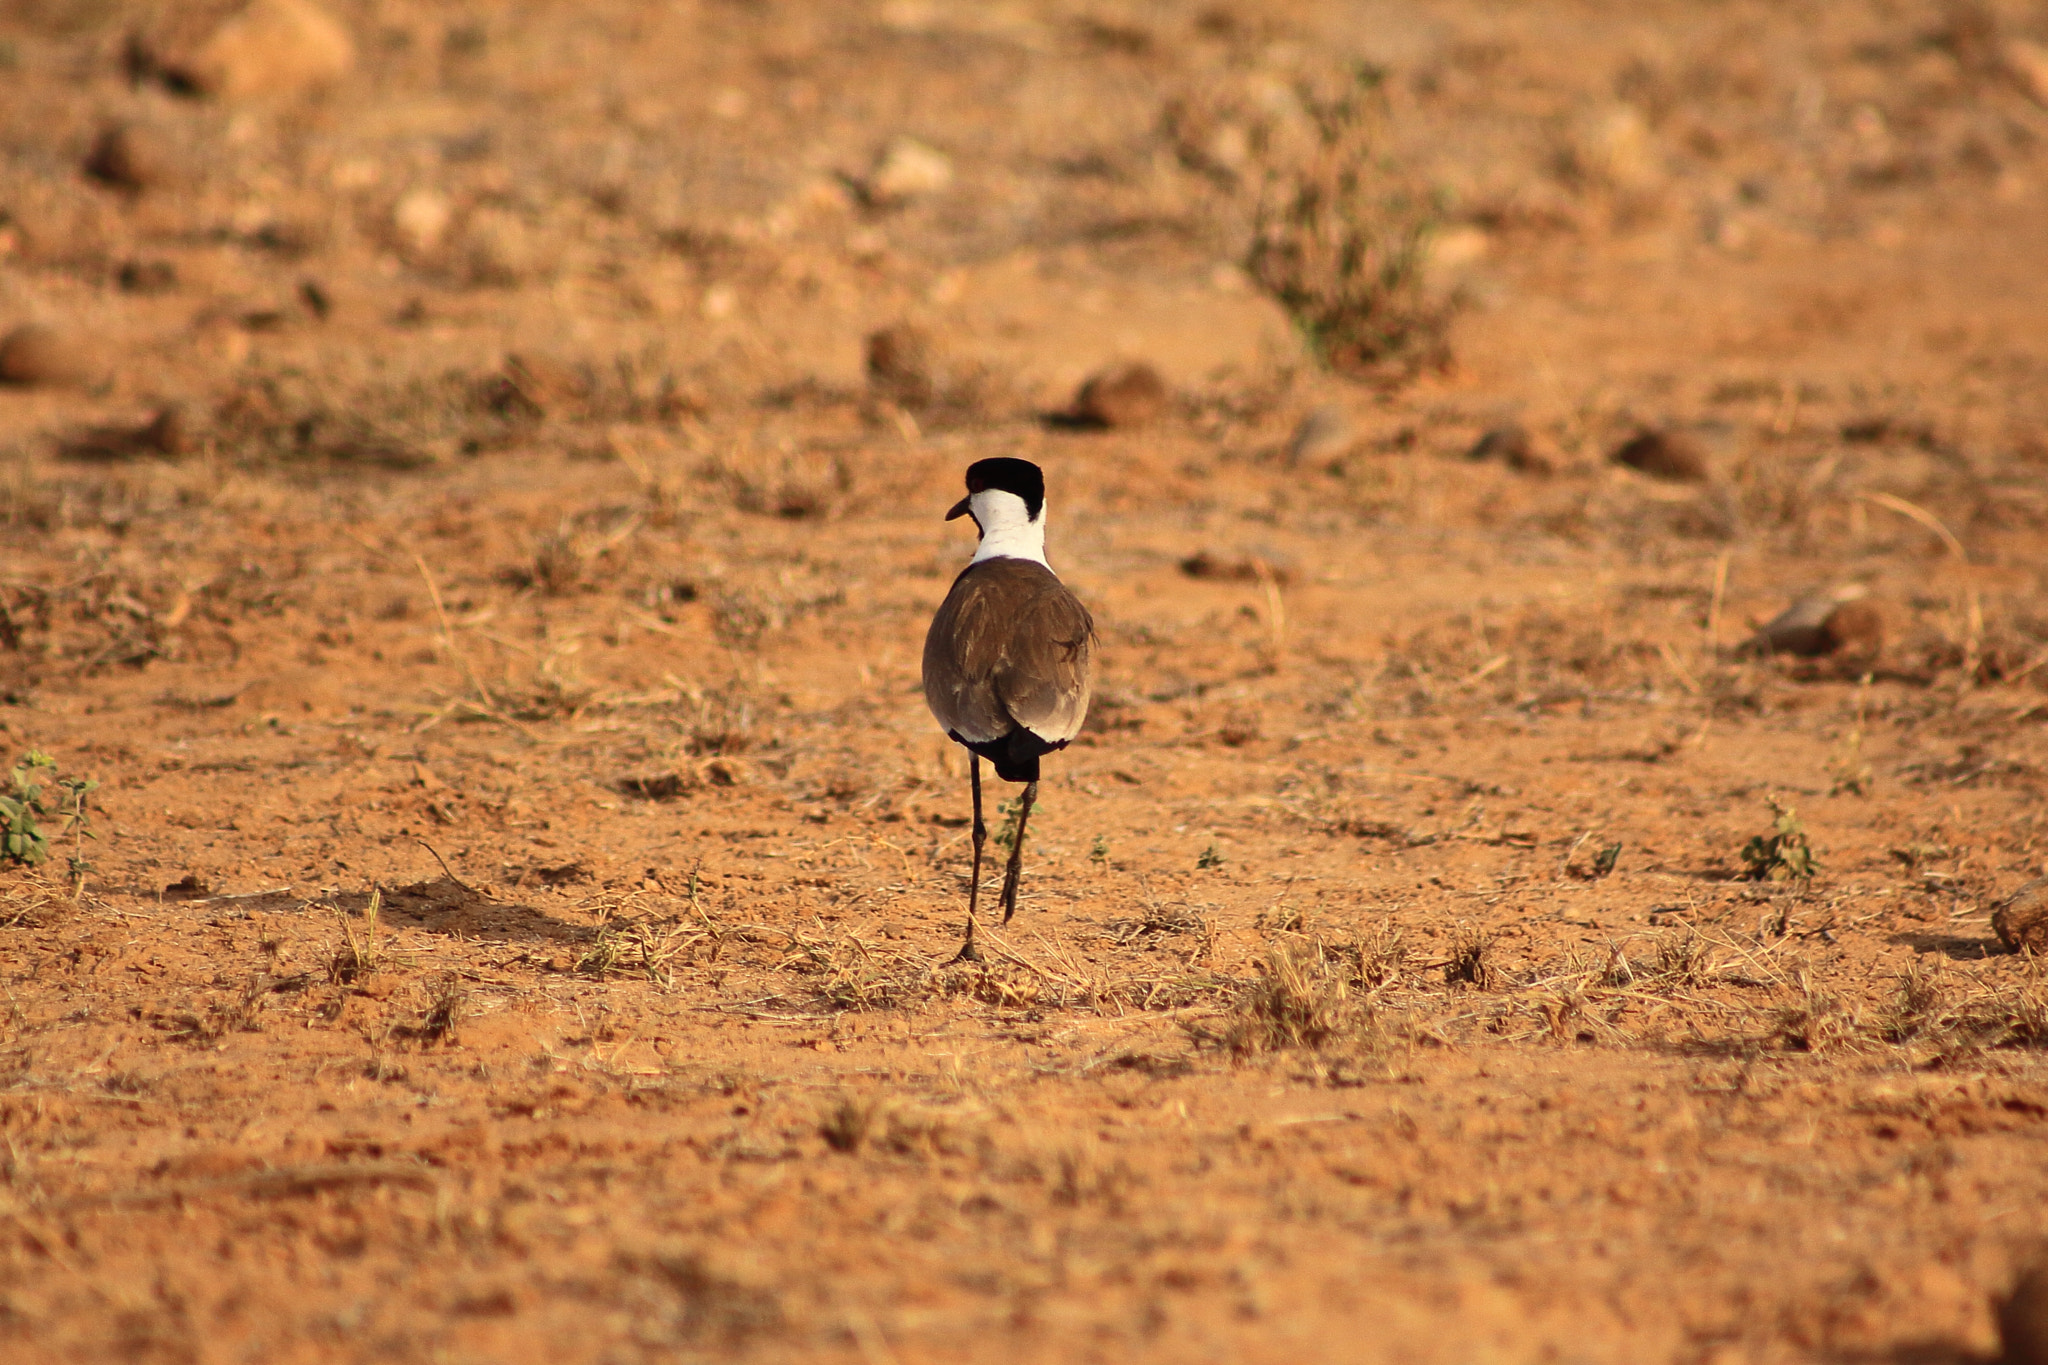 Canon EOS 50D sample photo. Kenia solitary bird photography